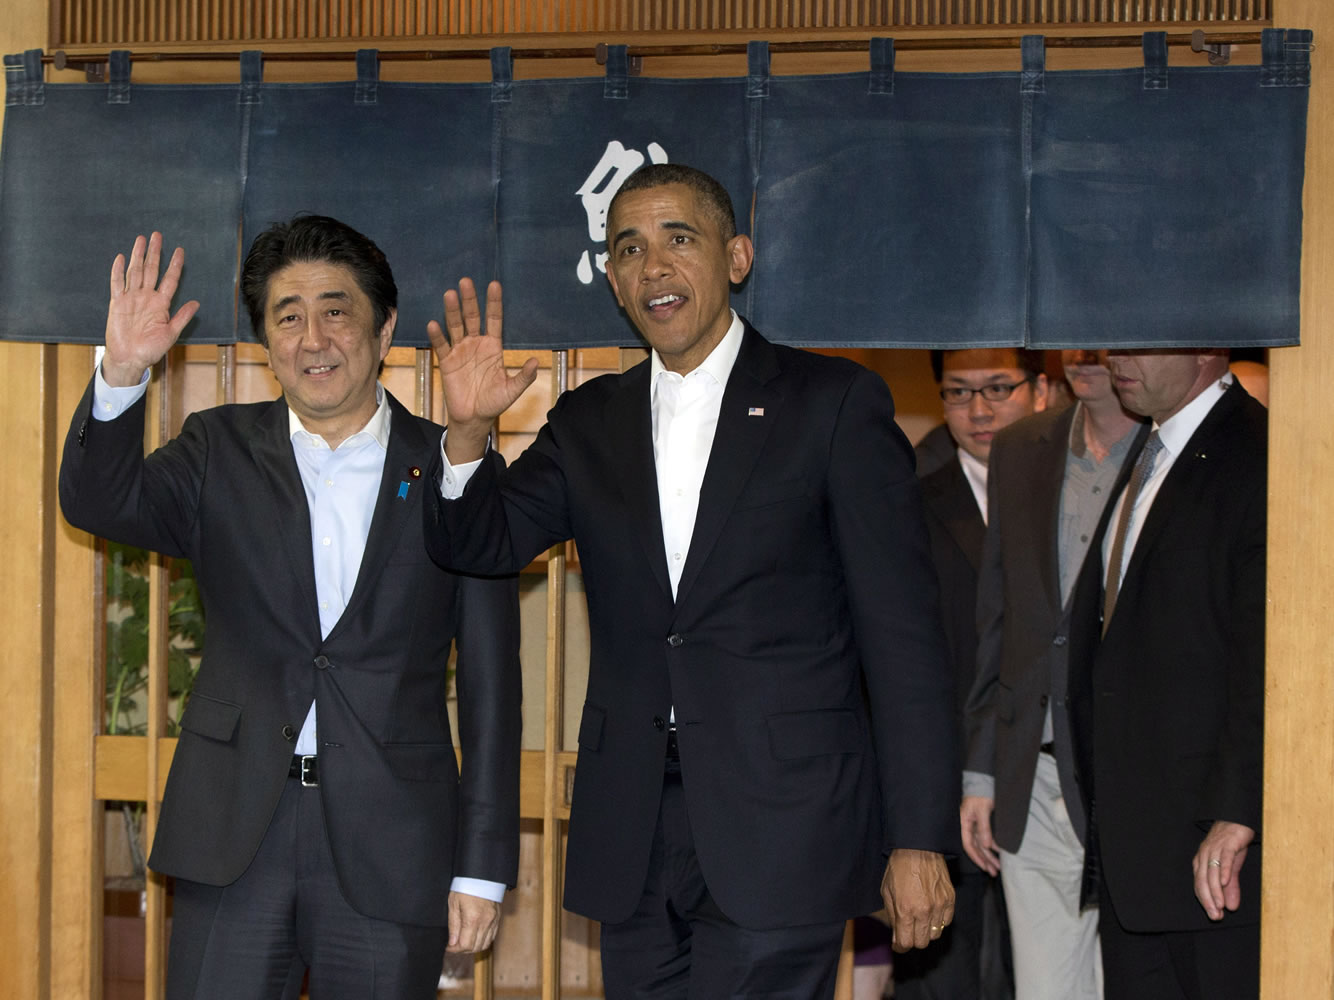 President Barack Obama and Japanese Prime Minister Shinzo Abe wave to media as they depart Sukiyabashi Jiro sushi restaurant in Tokyo on Wednesday.